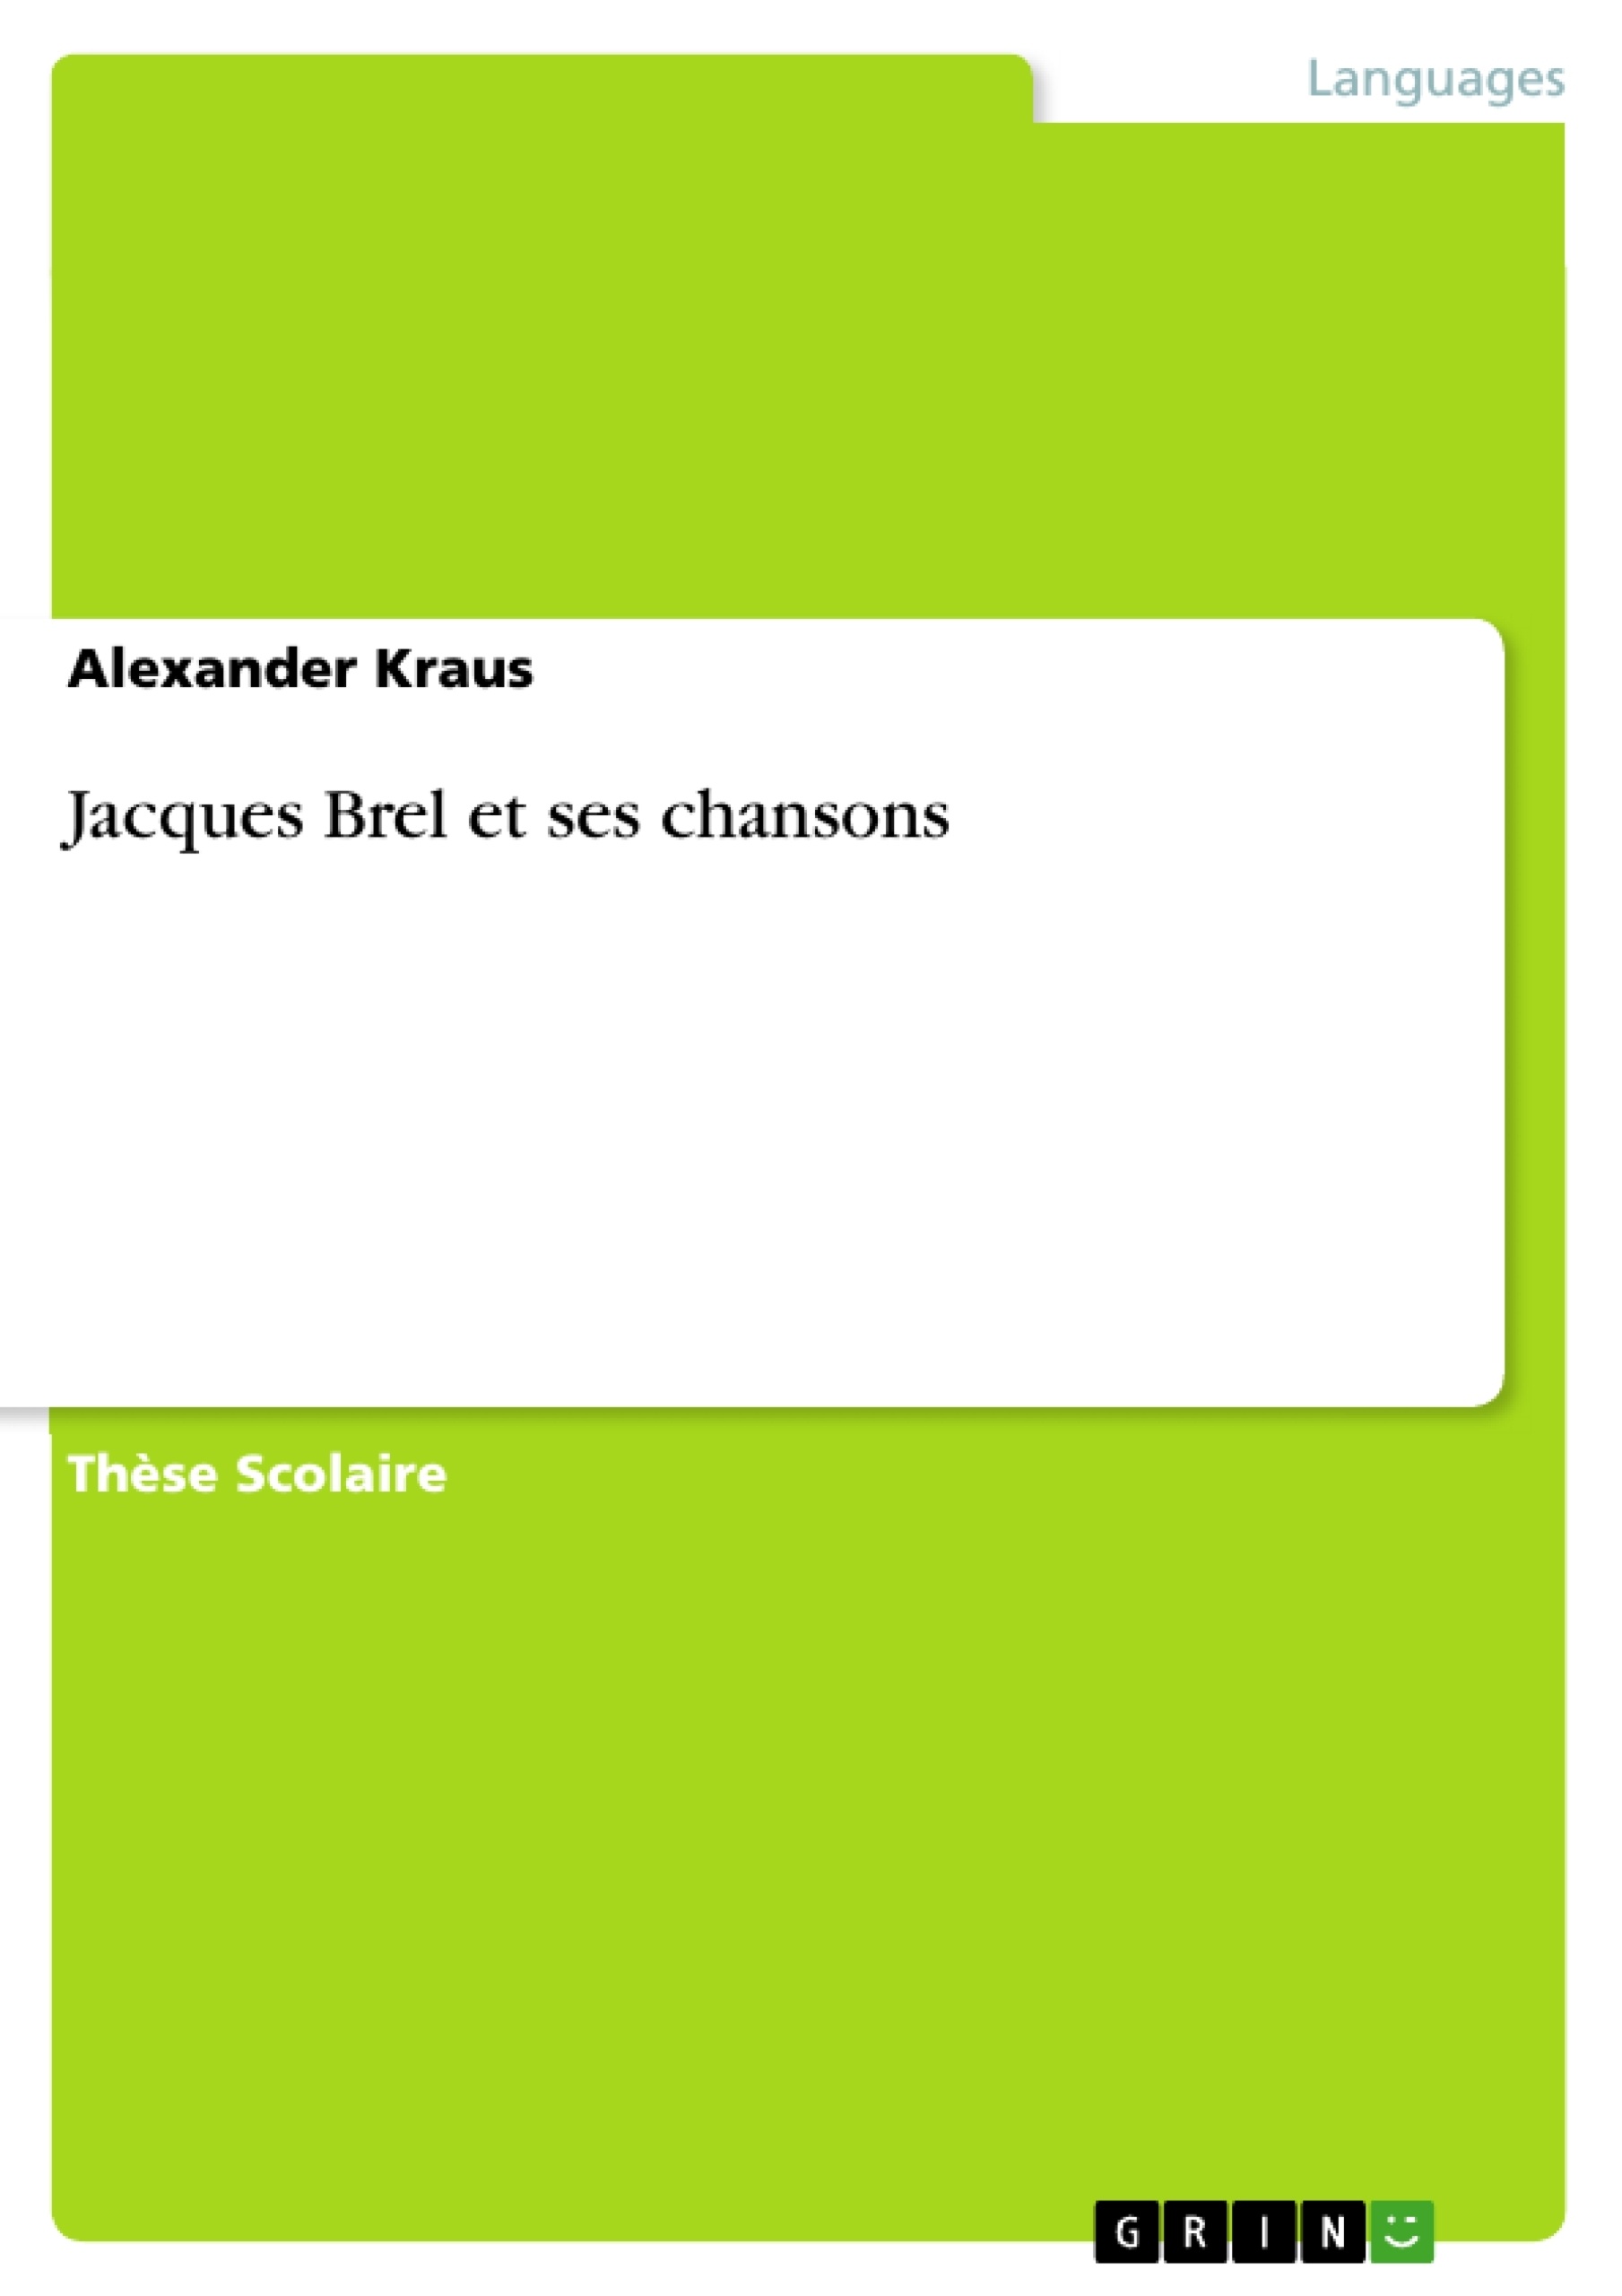 Título: Jacques Brel et ses chansons